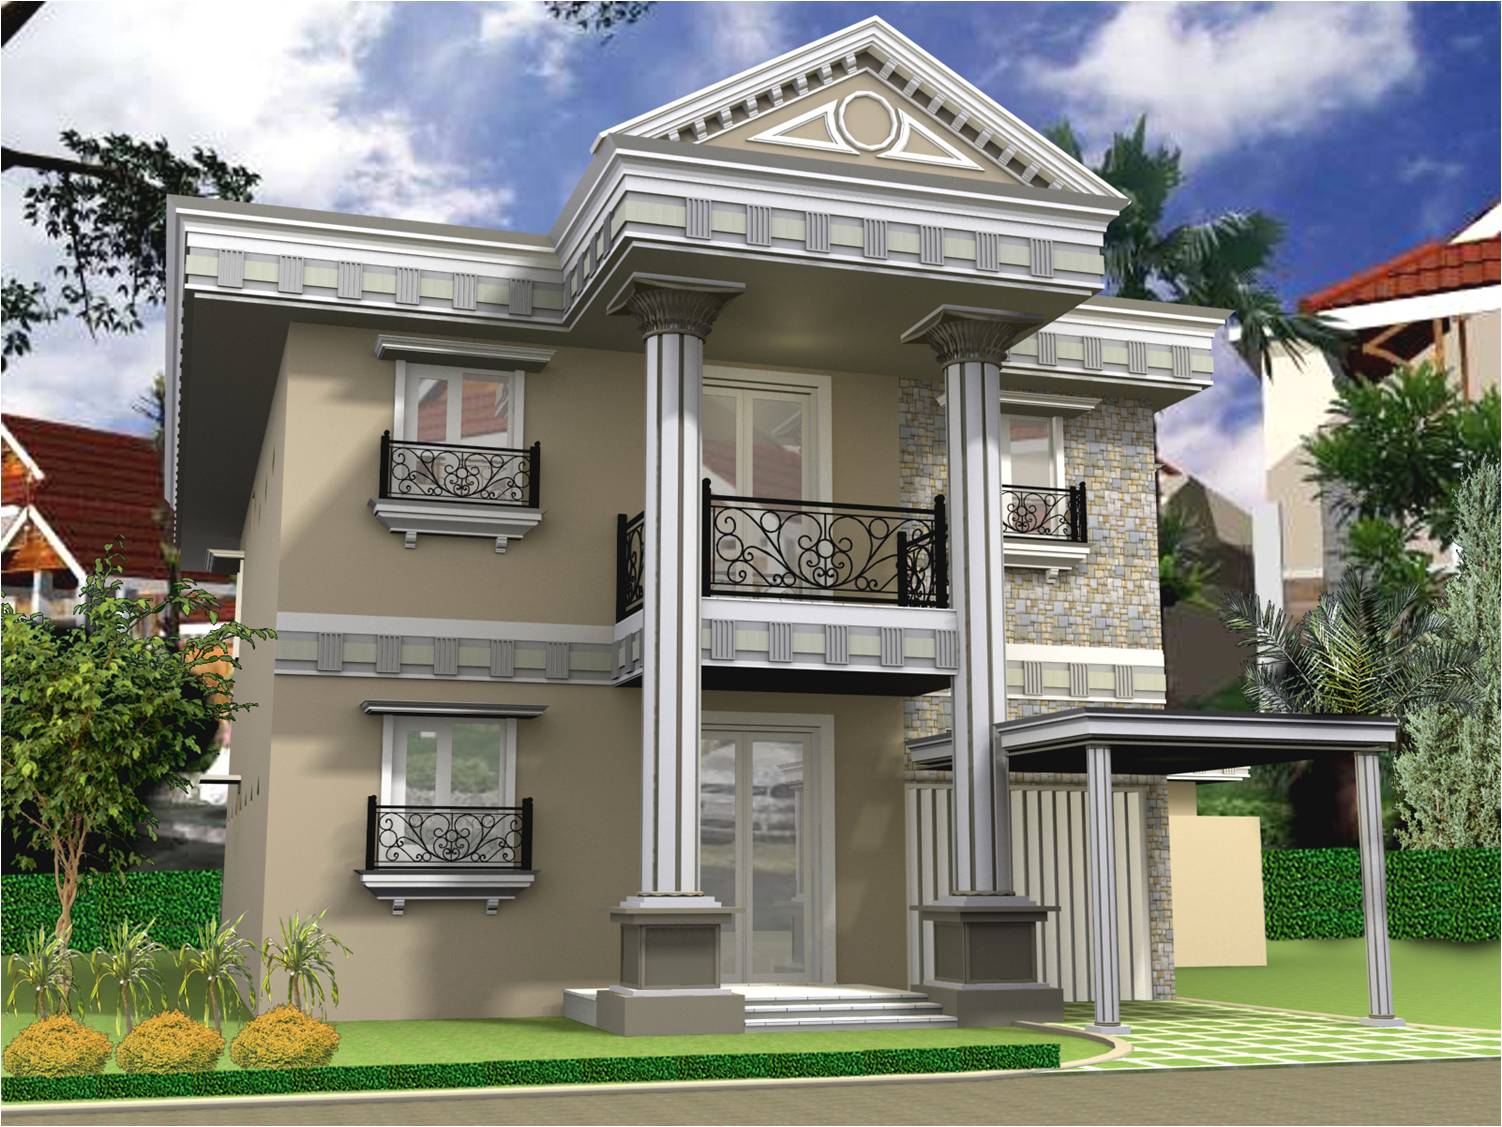 ... Rumah Minimalis 2 Lantai Sederhana Terbaru | Desain Rumah Minimalis